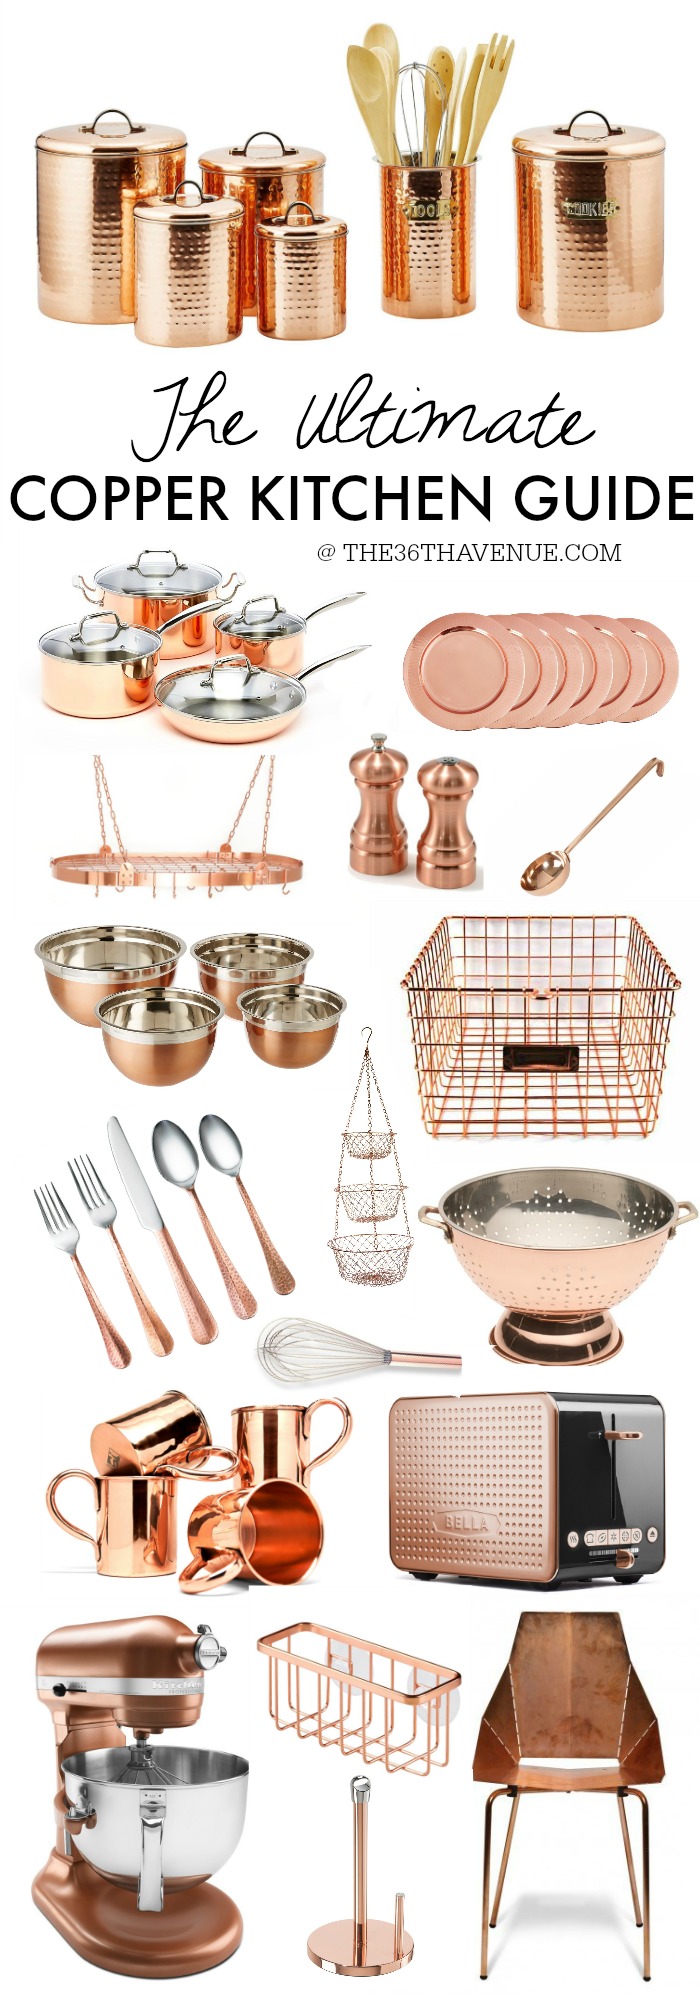 copper kitchen decorative accessories